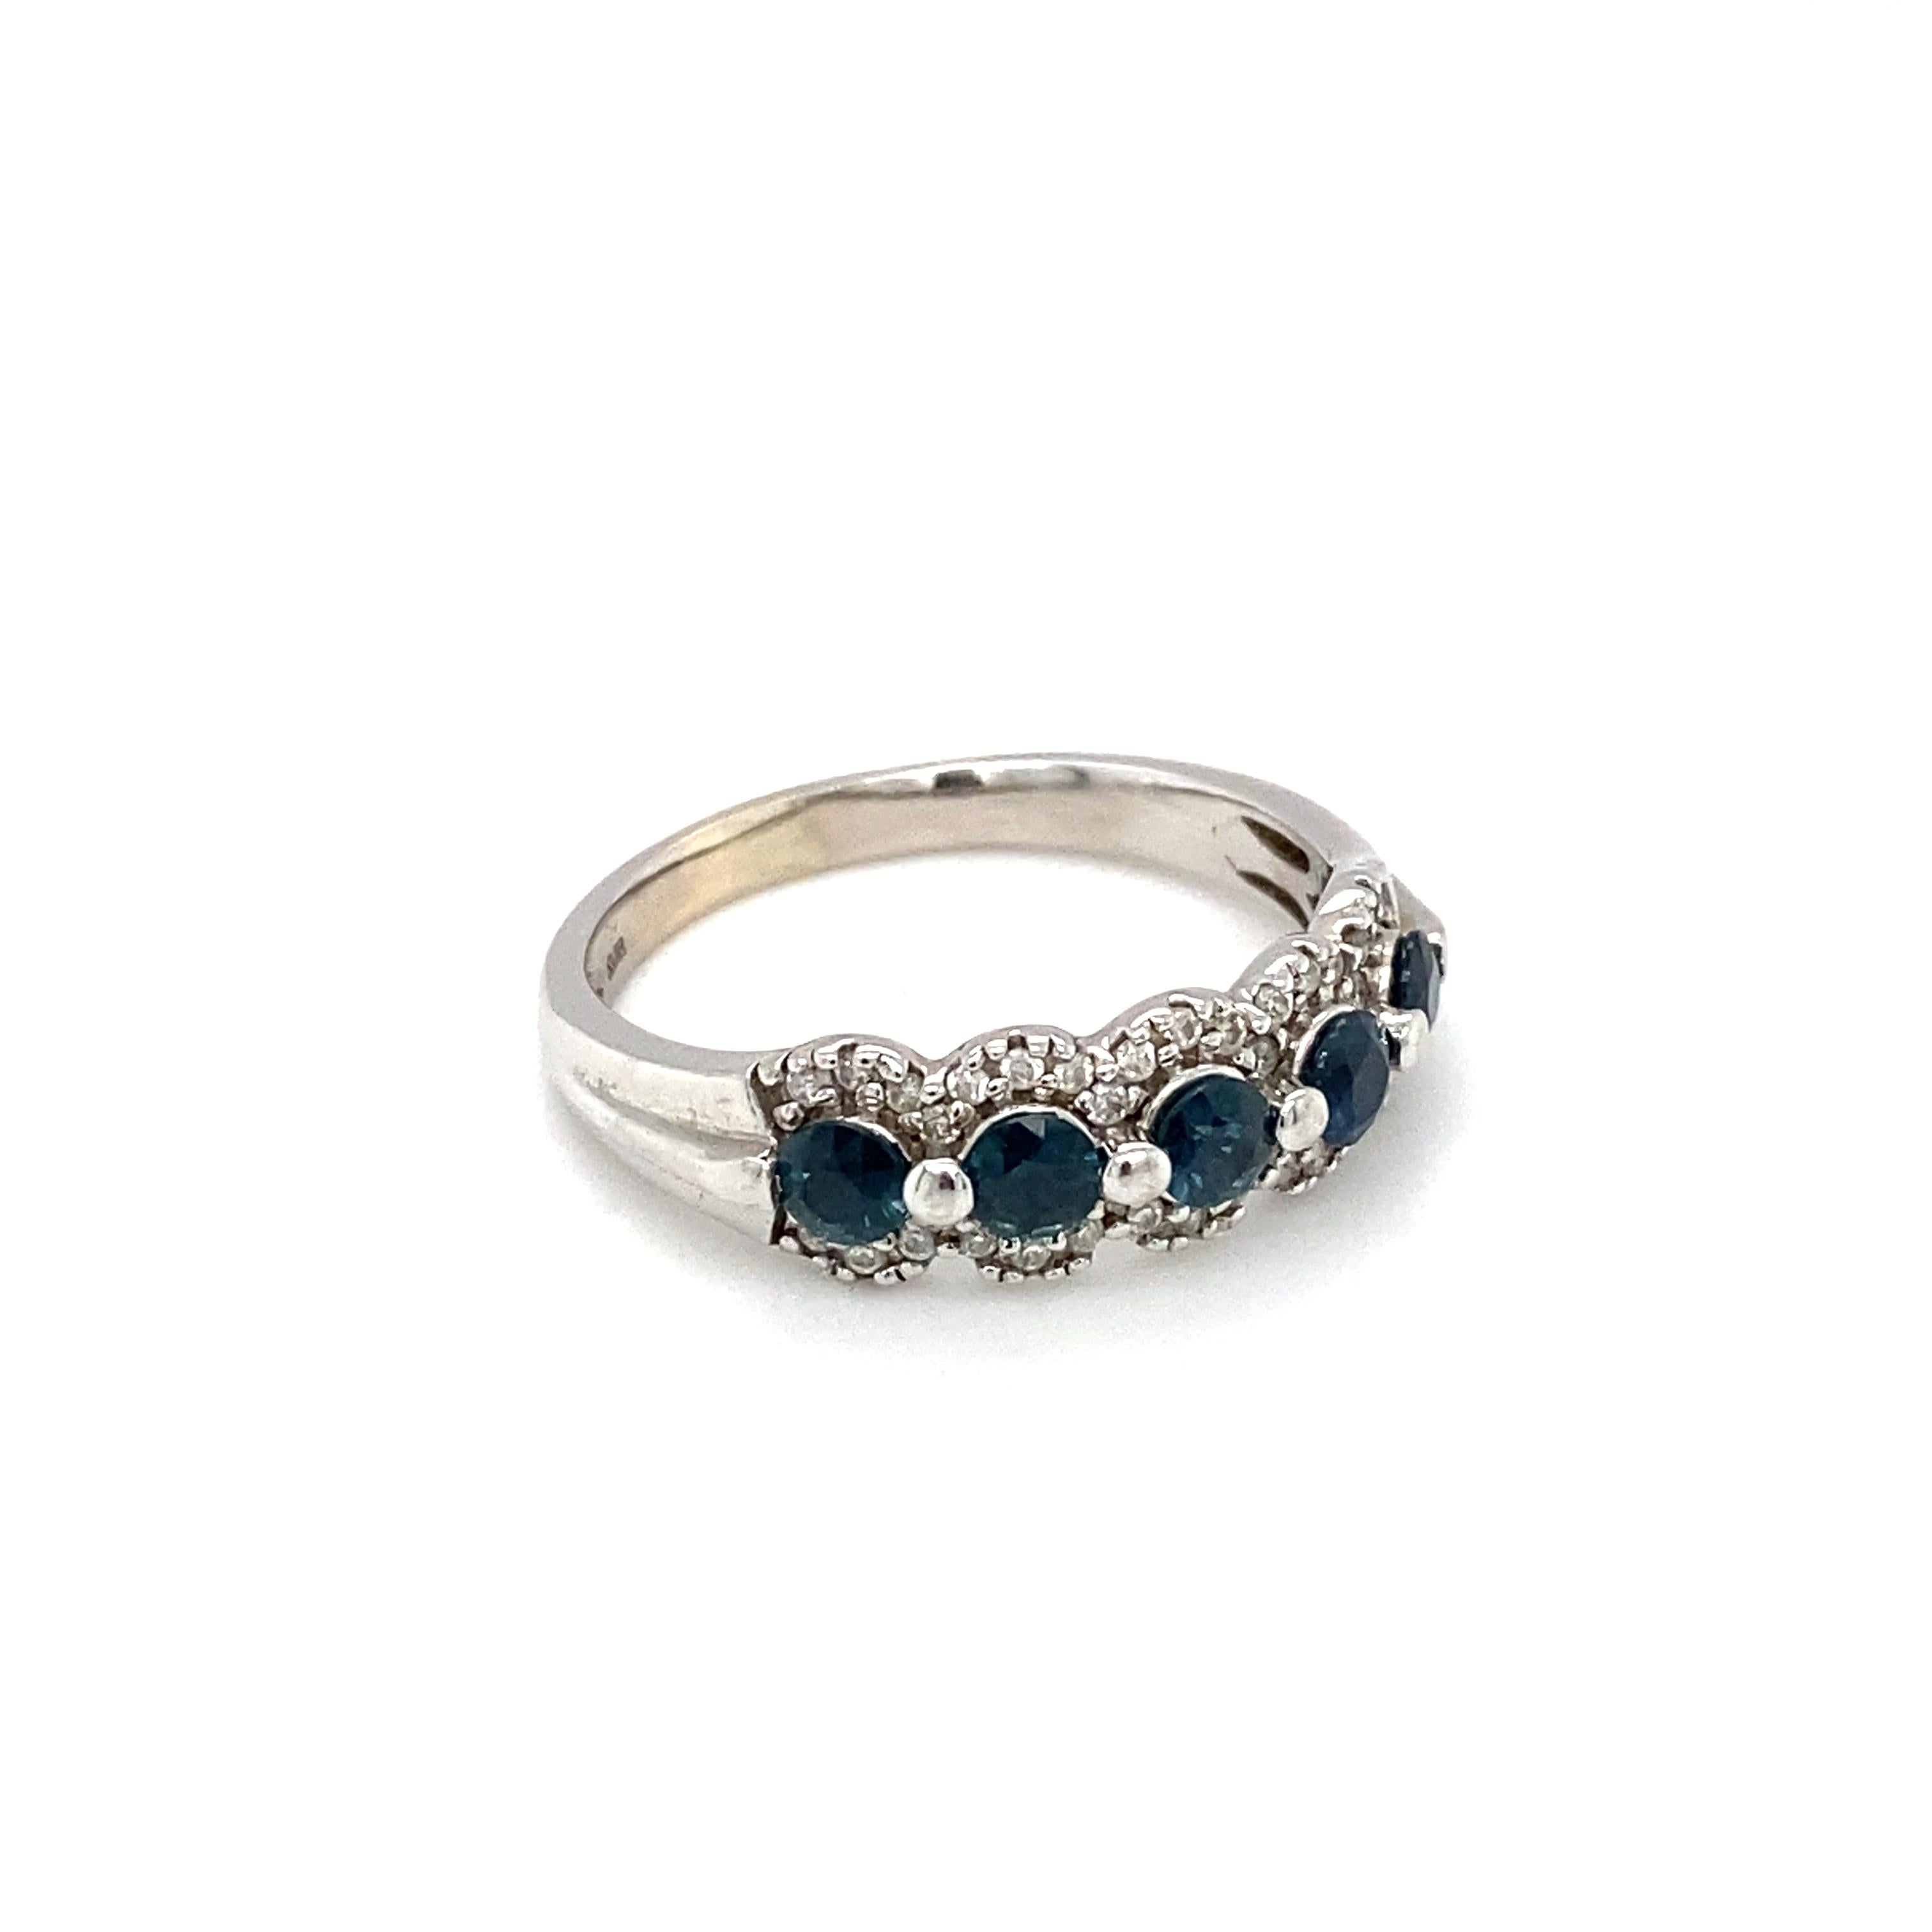 Artikel-Details: Dieses wunderschöne Band mit Saphir und Diamant eignet sich perfekt zum Stapeln mit anderen Ringen mit brillanten Farbsteinen. Er ist sehr vielseitig und eignet sich auch hervorragend als Verlobungsring, Jubiläumsring oder Ring für